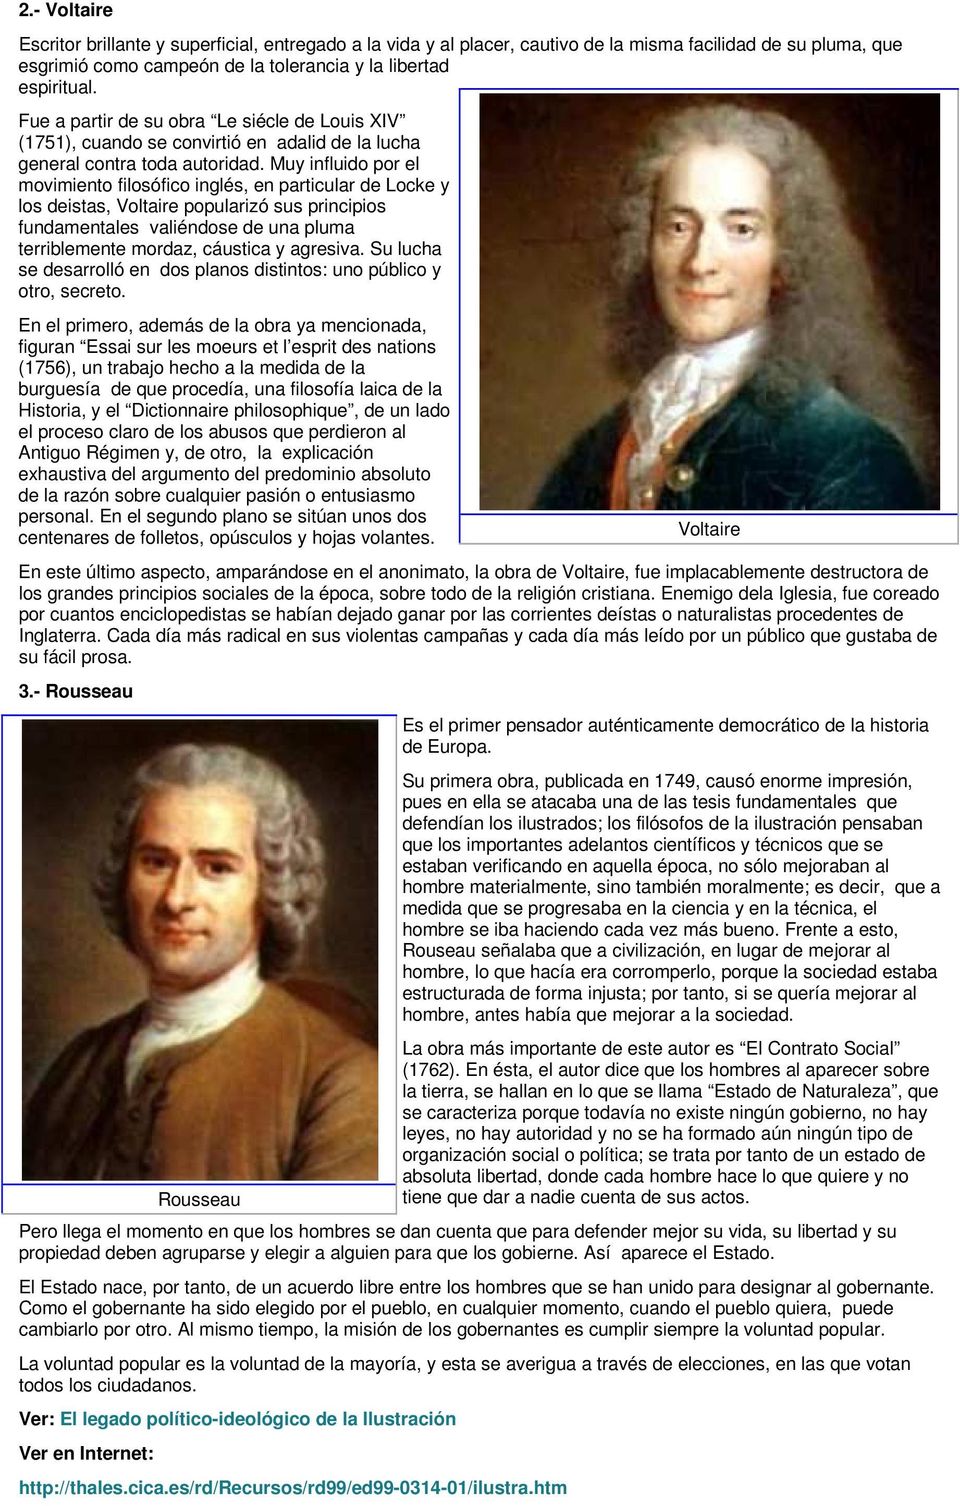 Muy influido por el movimiento filosófico inglés, en particular de Locke y los deistas, Voltaire popularizó sus principios fundamentales valiéndose de una pluma terriblemente mordaz, cáustica y